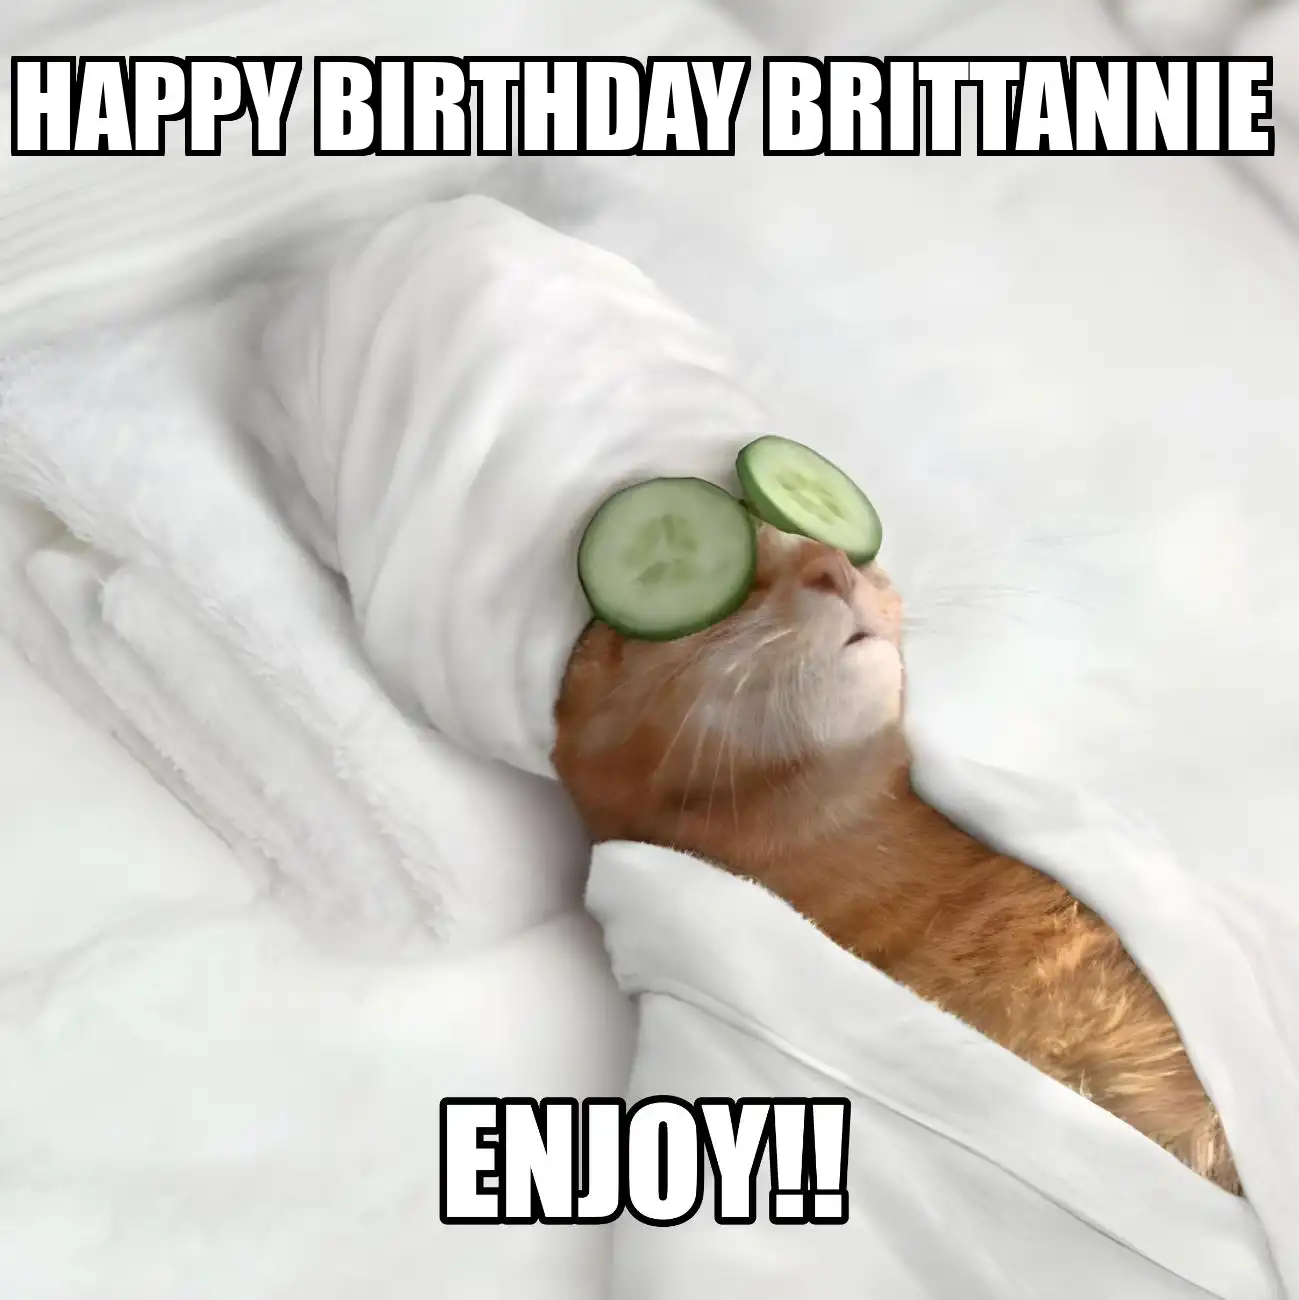 Happy Birthday Brittannie Enjoy Cat Meme